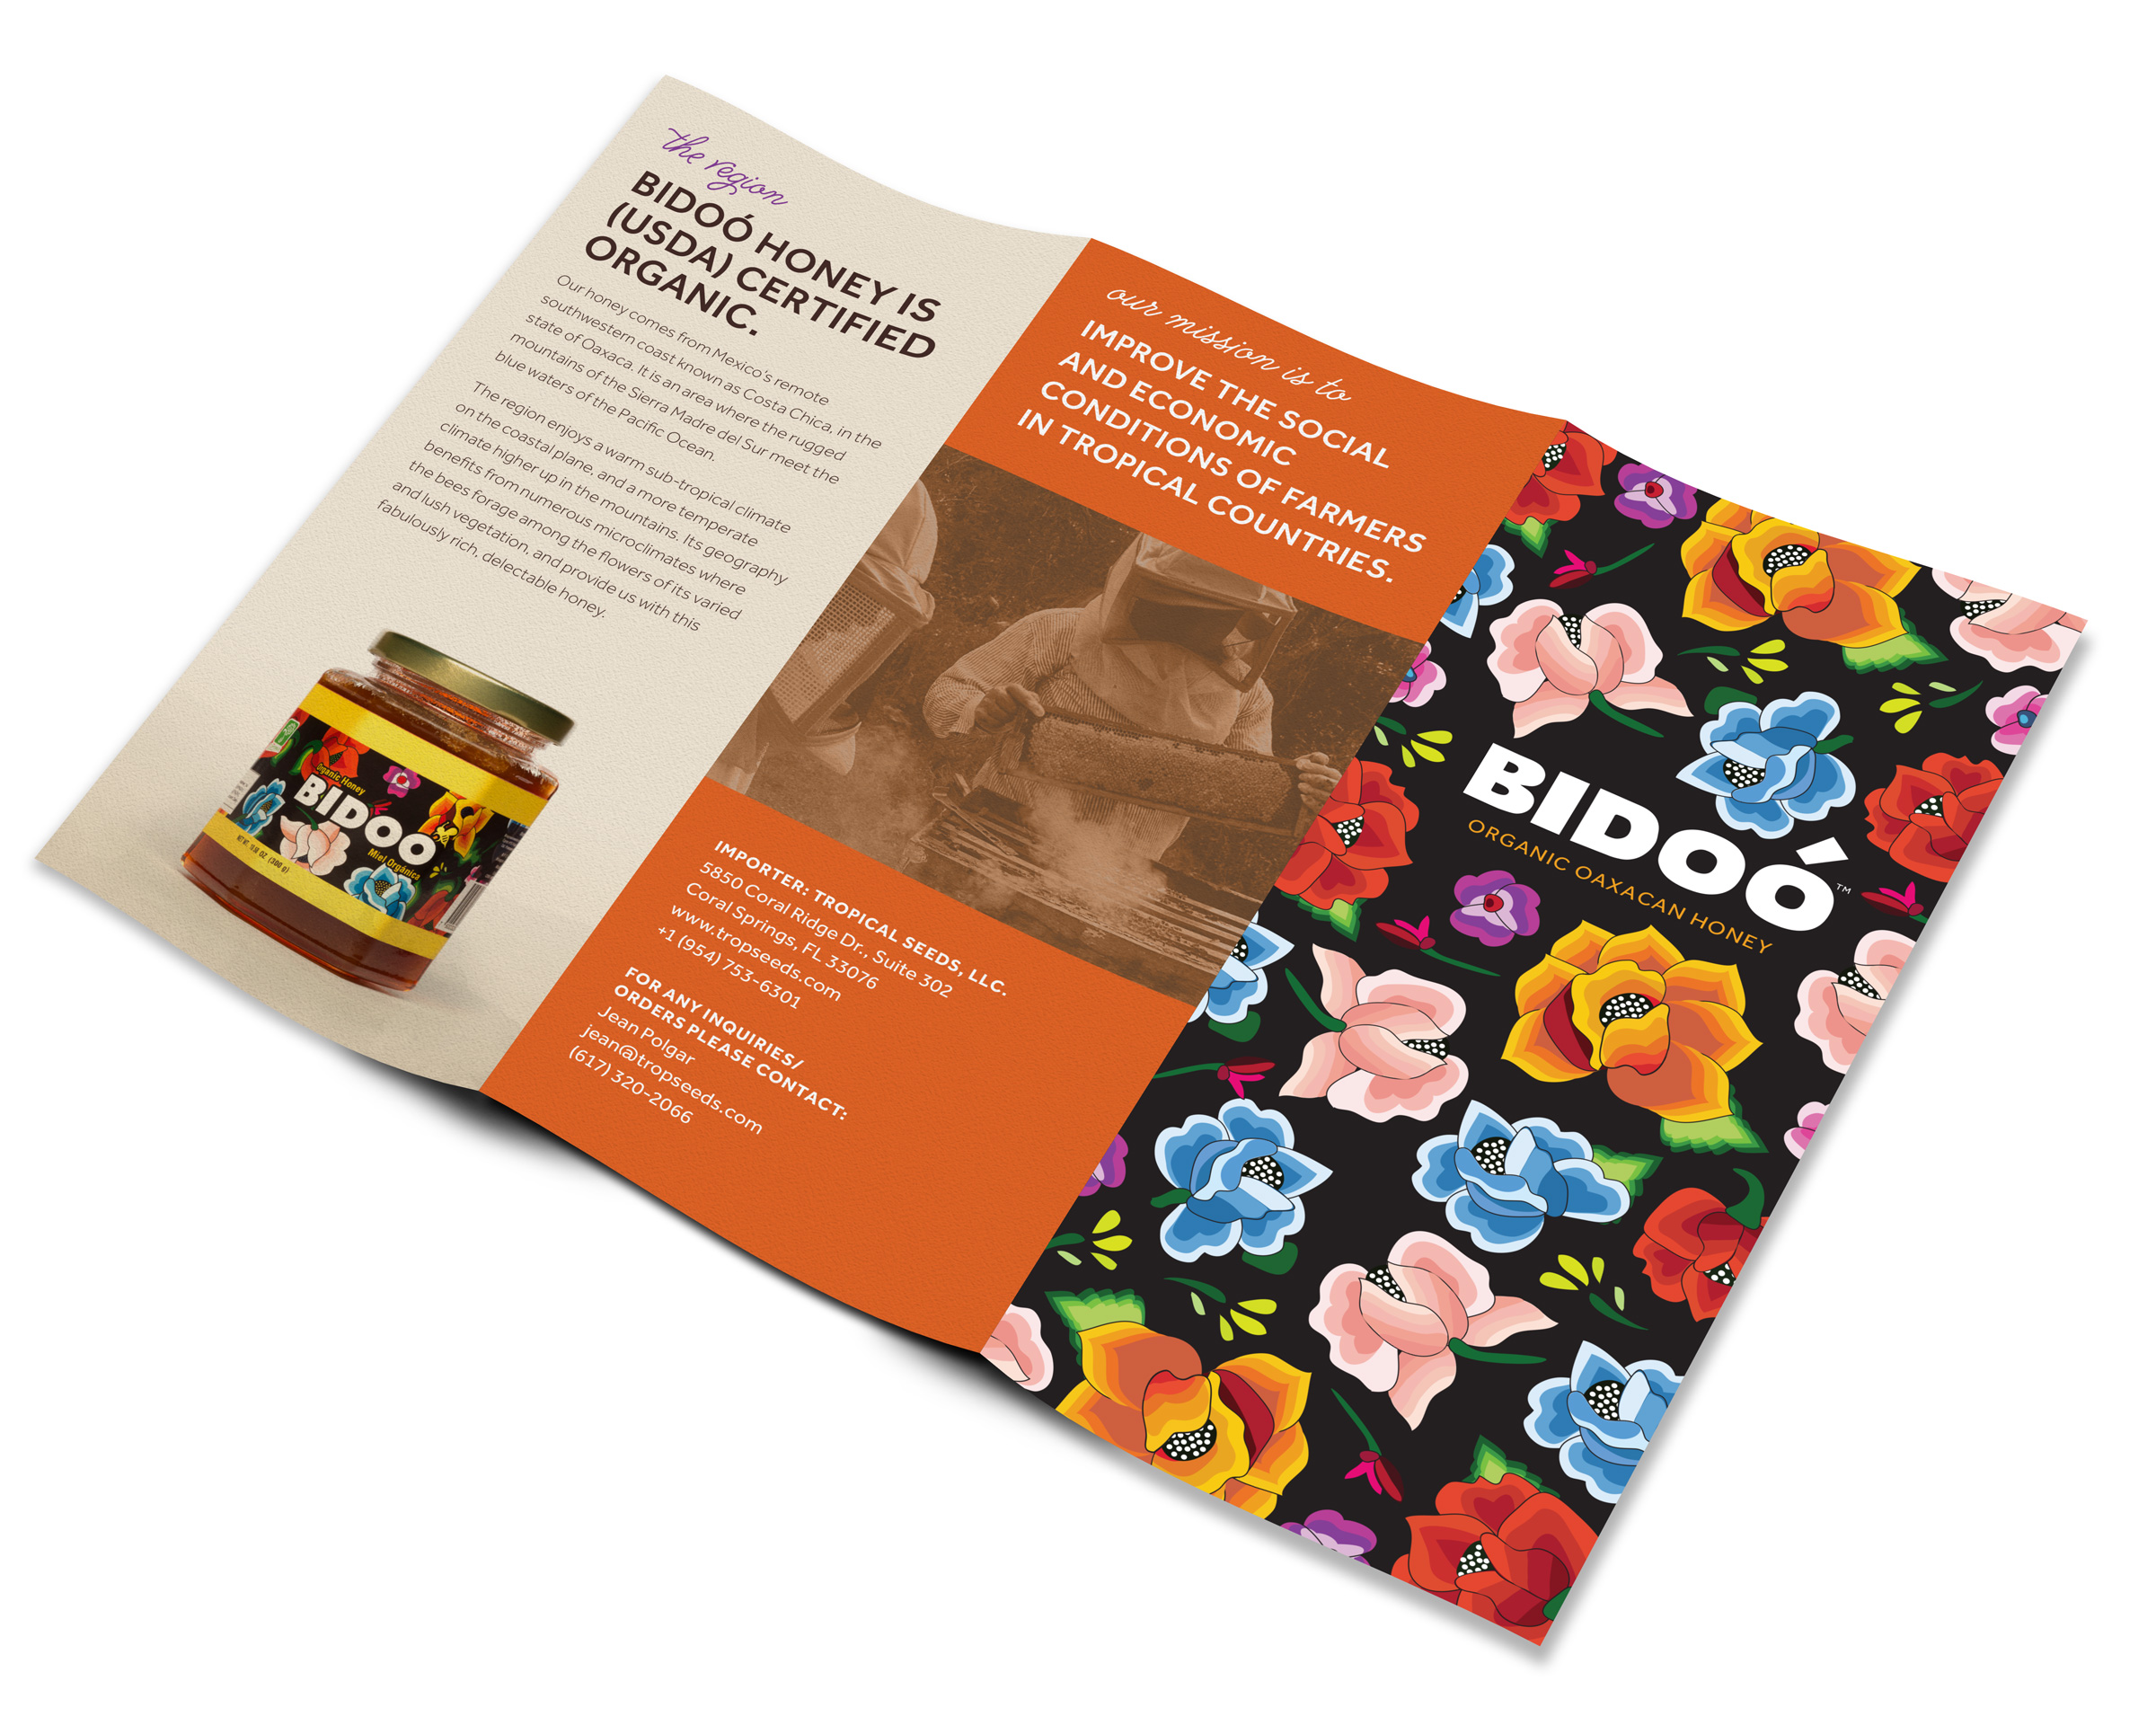 Bidoo Honey product brochure